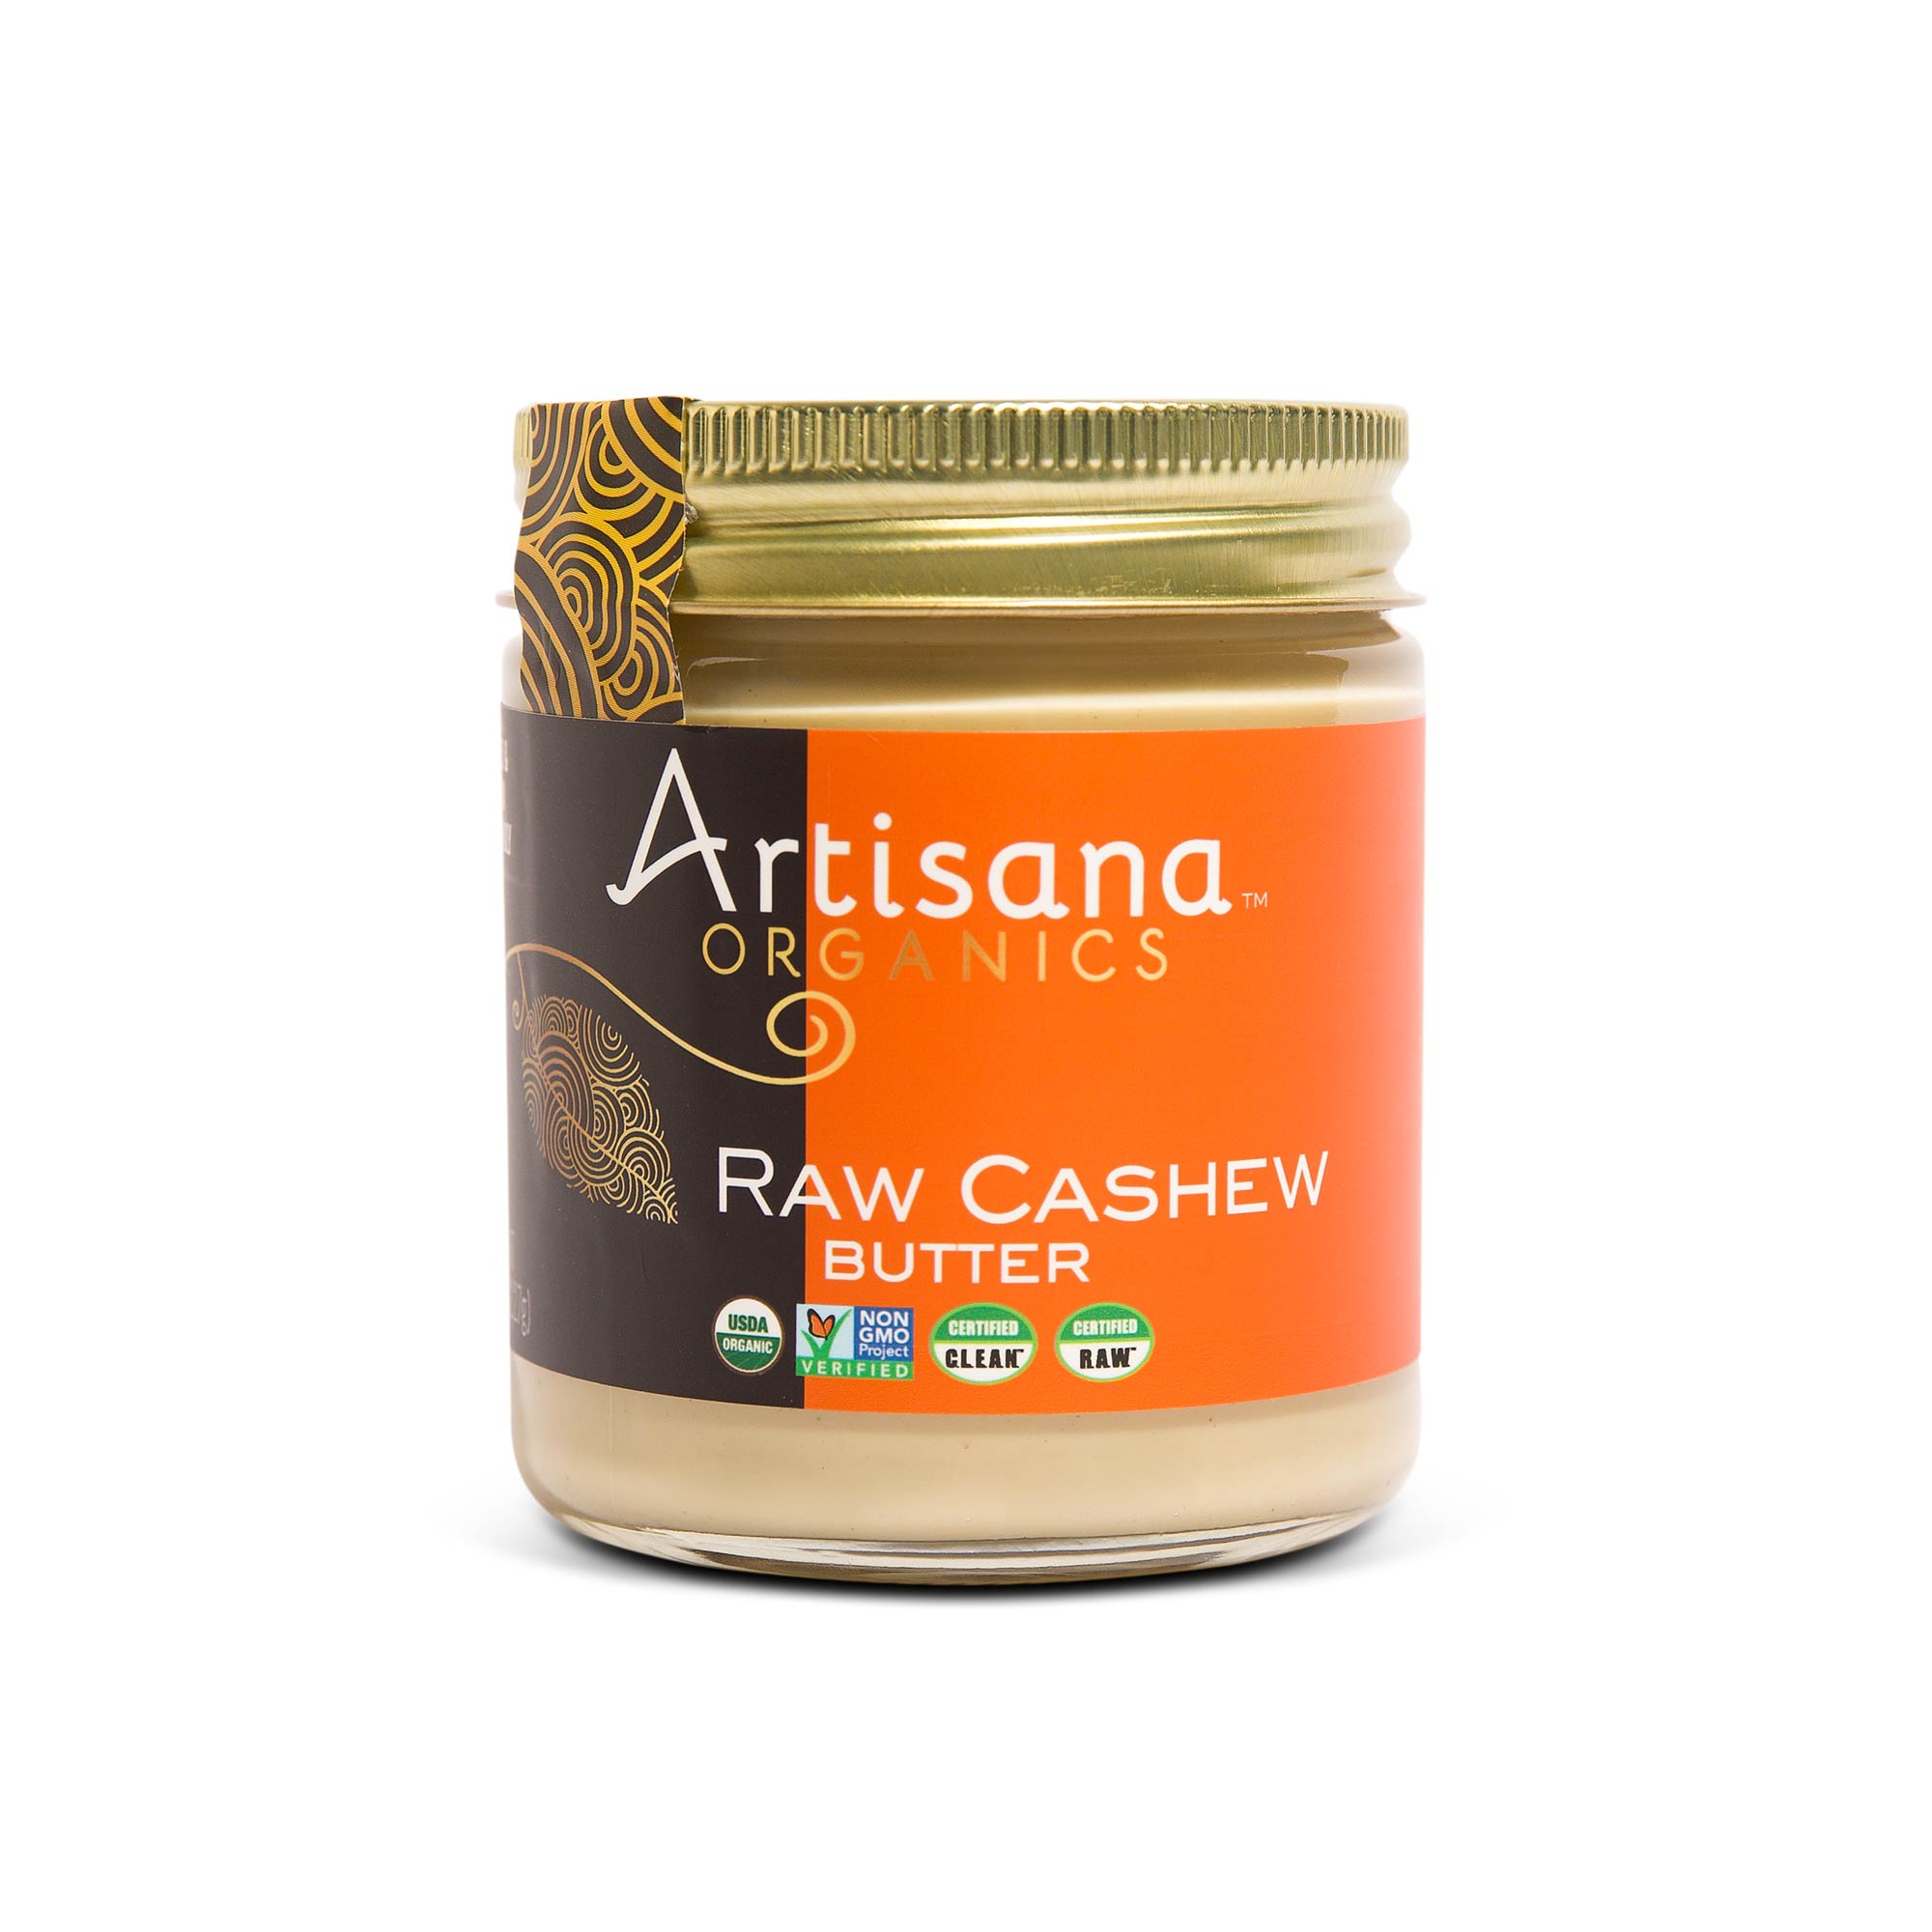 Artisana Raw Cashew Butter, 8oz jar